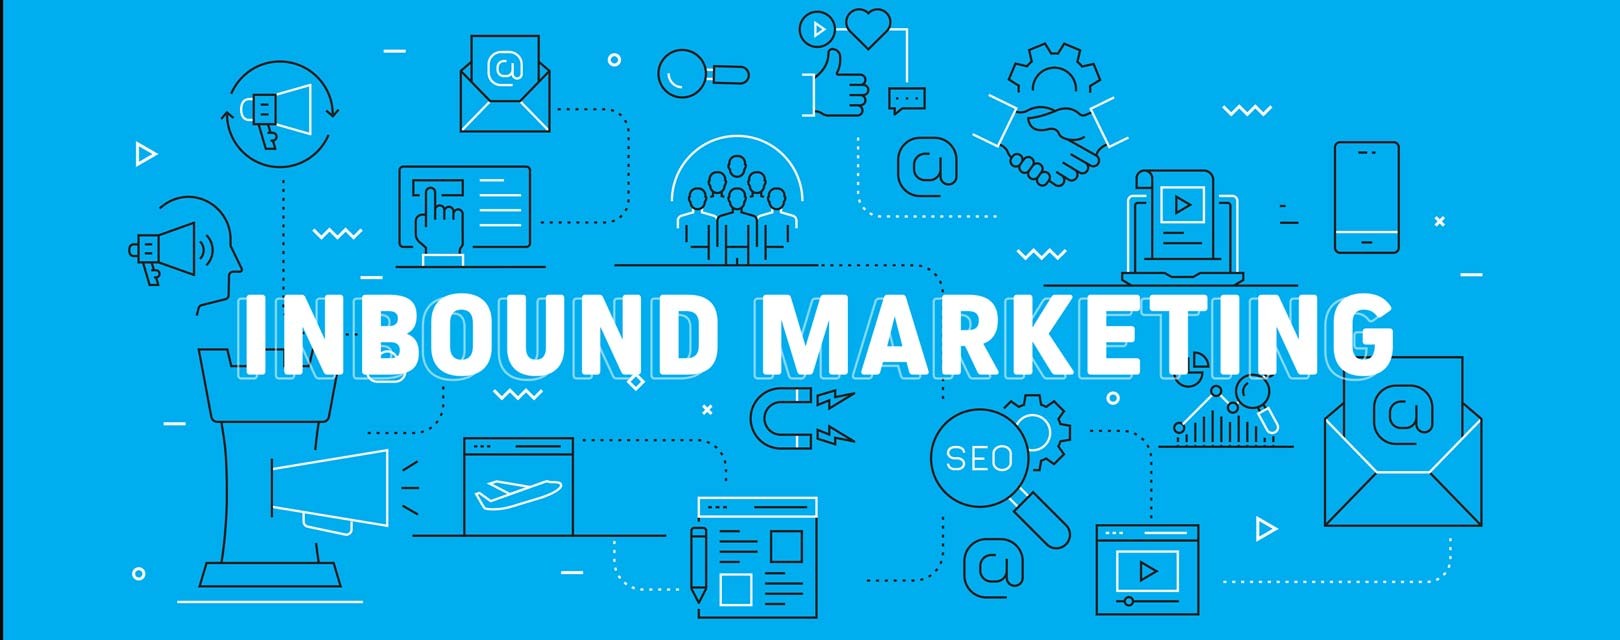 Inbound marketing graphic with blue back ground